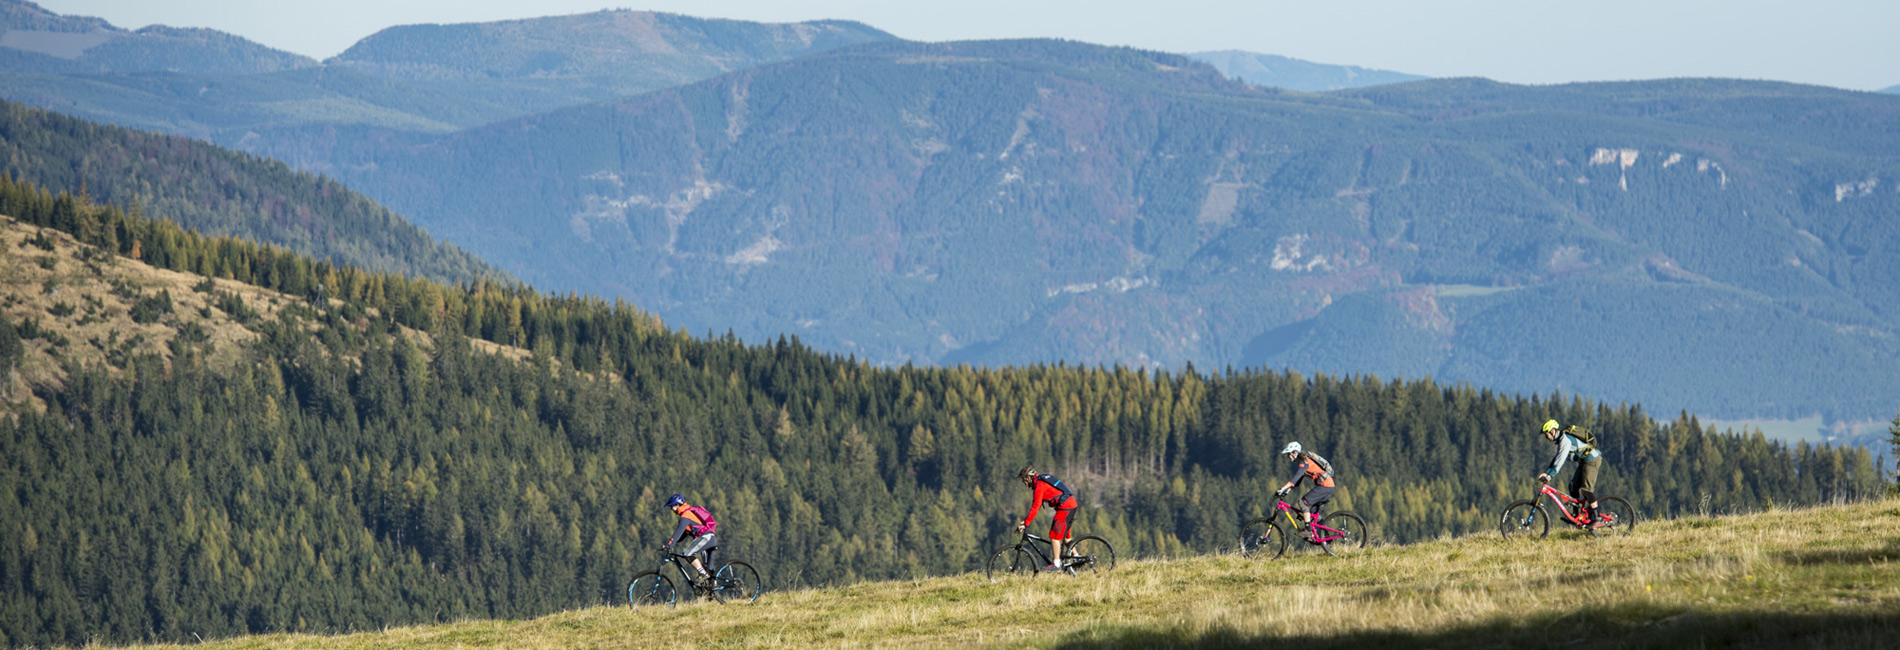 Bikeurlaub Wiener Alpen - Uphillbiken und Endurobiken in St. Corona am Wechsel - copyright Wexl Trails